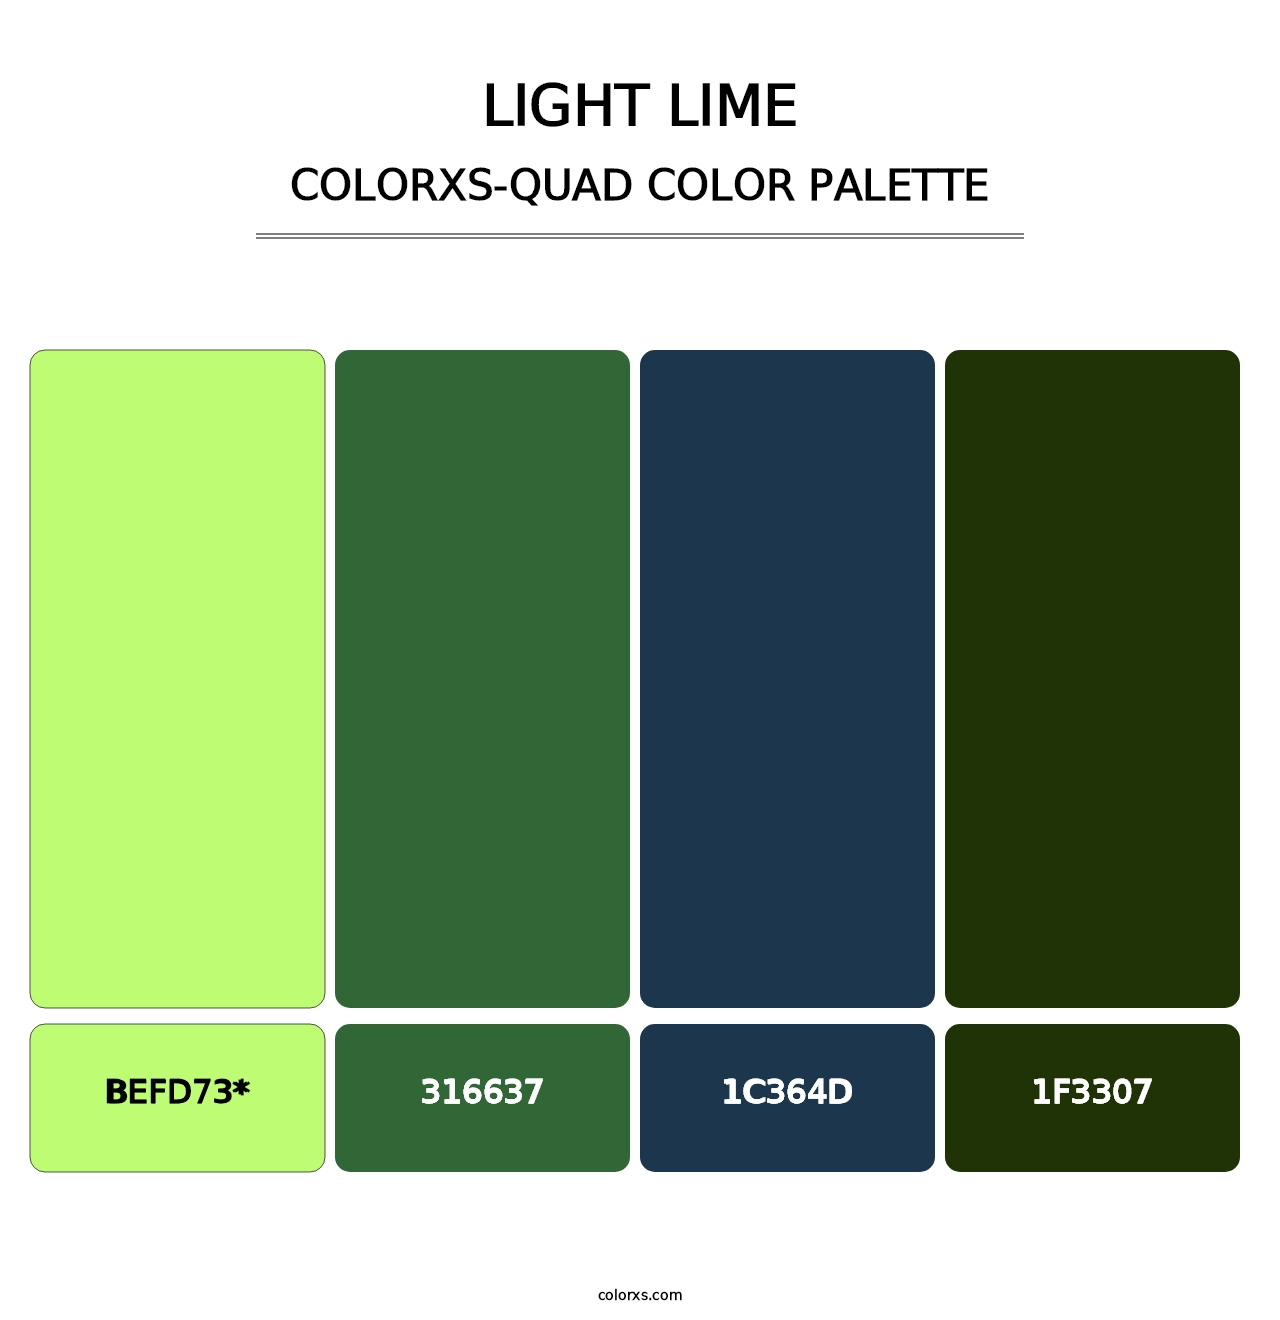 Light Lime - Colorxs Quad Palette